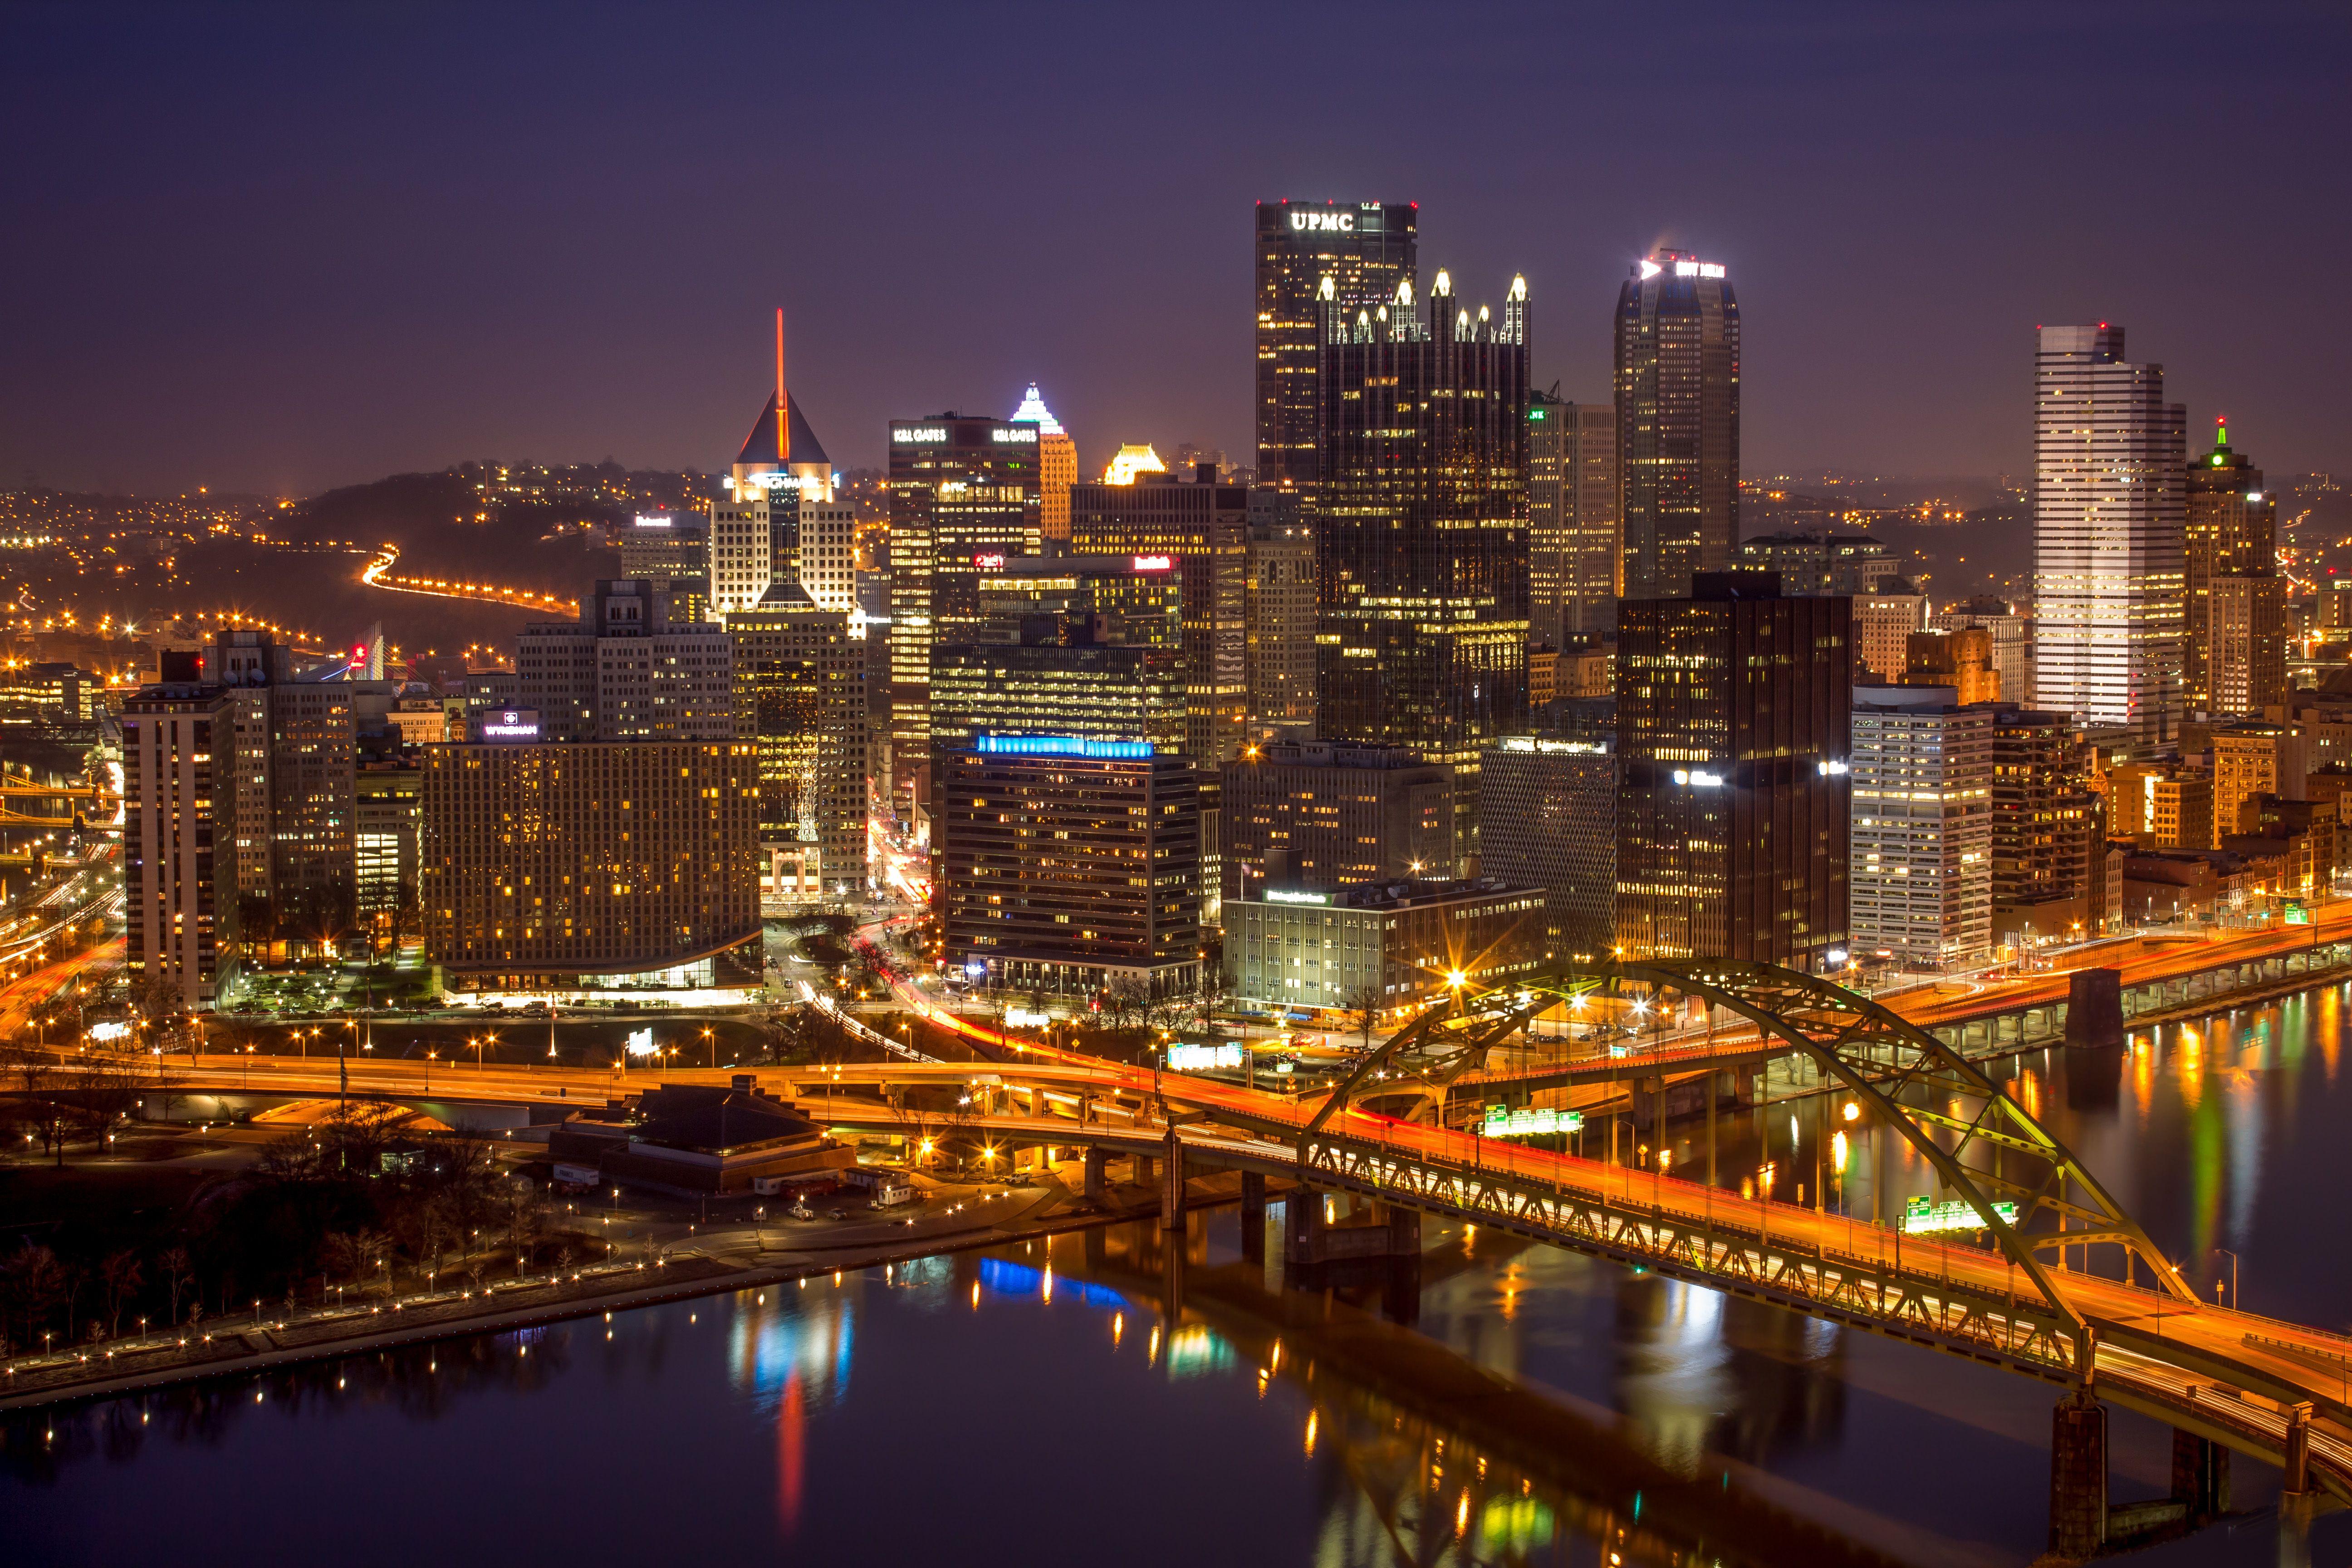 awesome Pittsburgh Background Image. AmazingPict.com